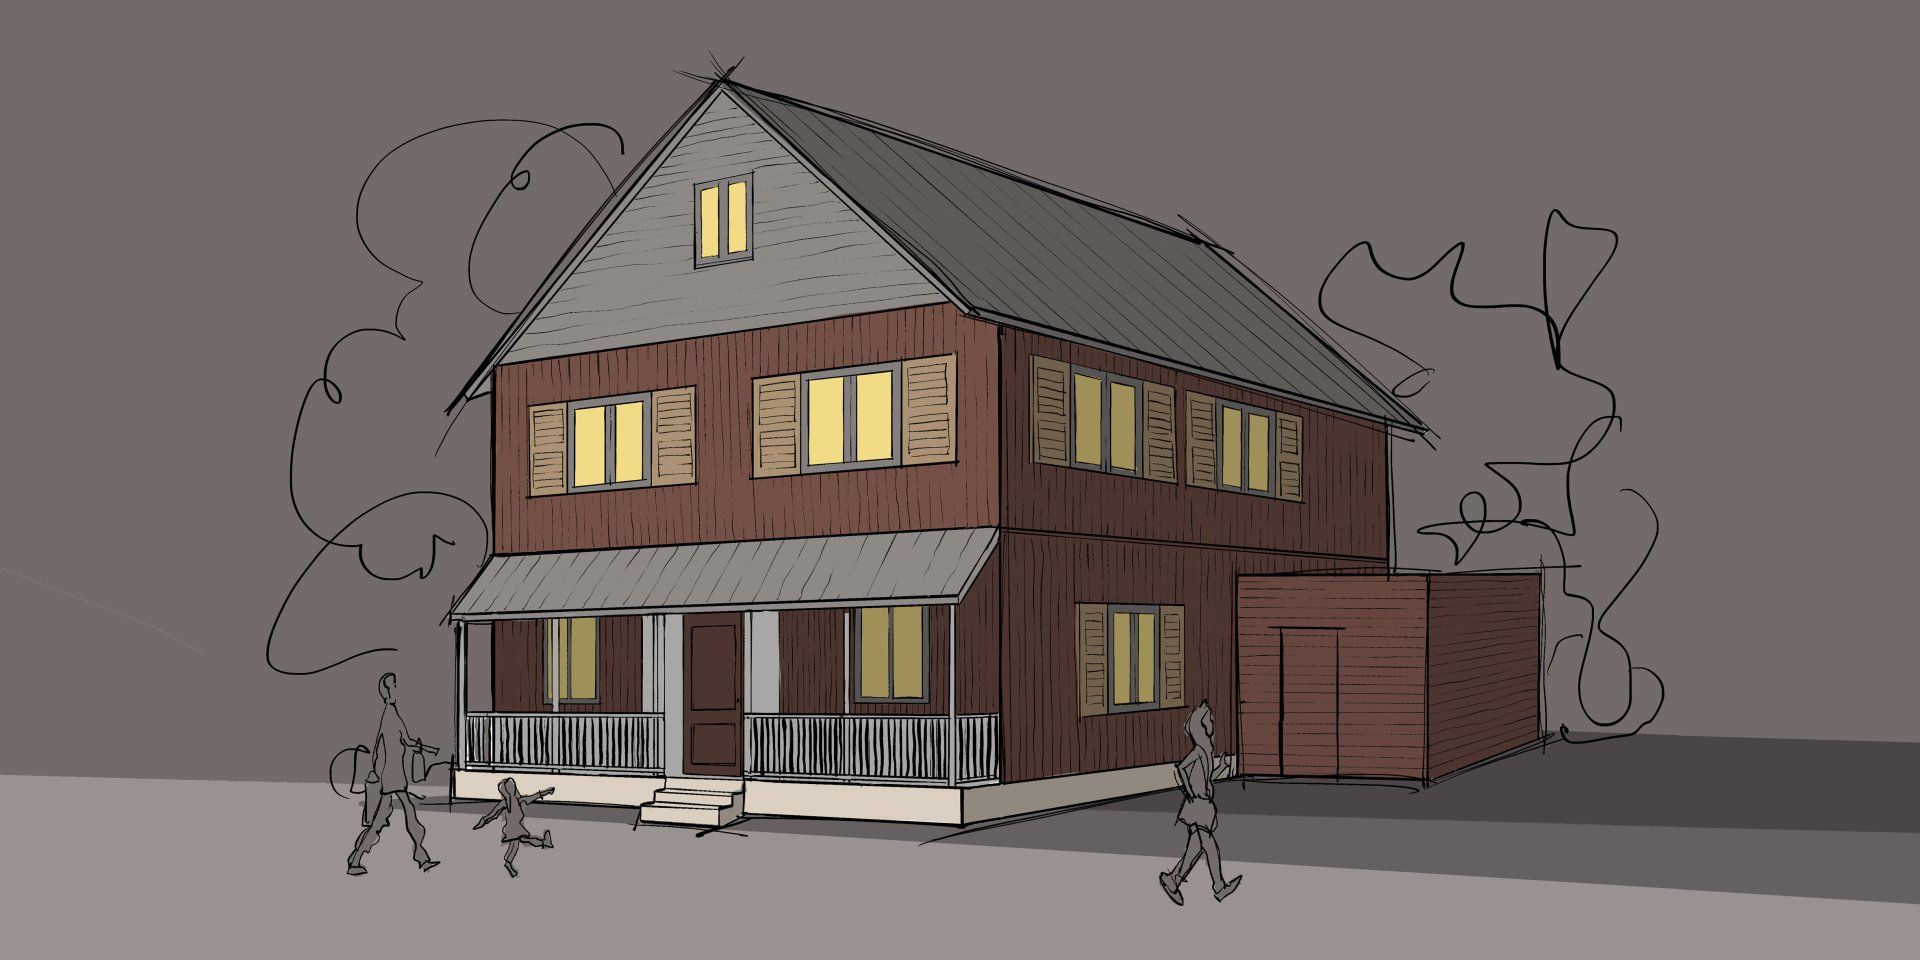 Projekt: Einfamilienhaus mit Veranda im Eingangsbereich